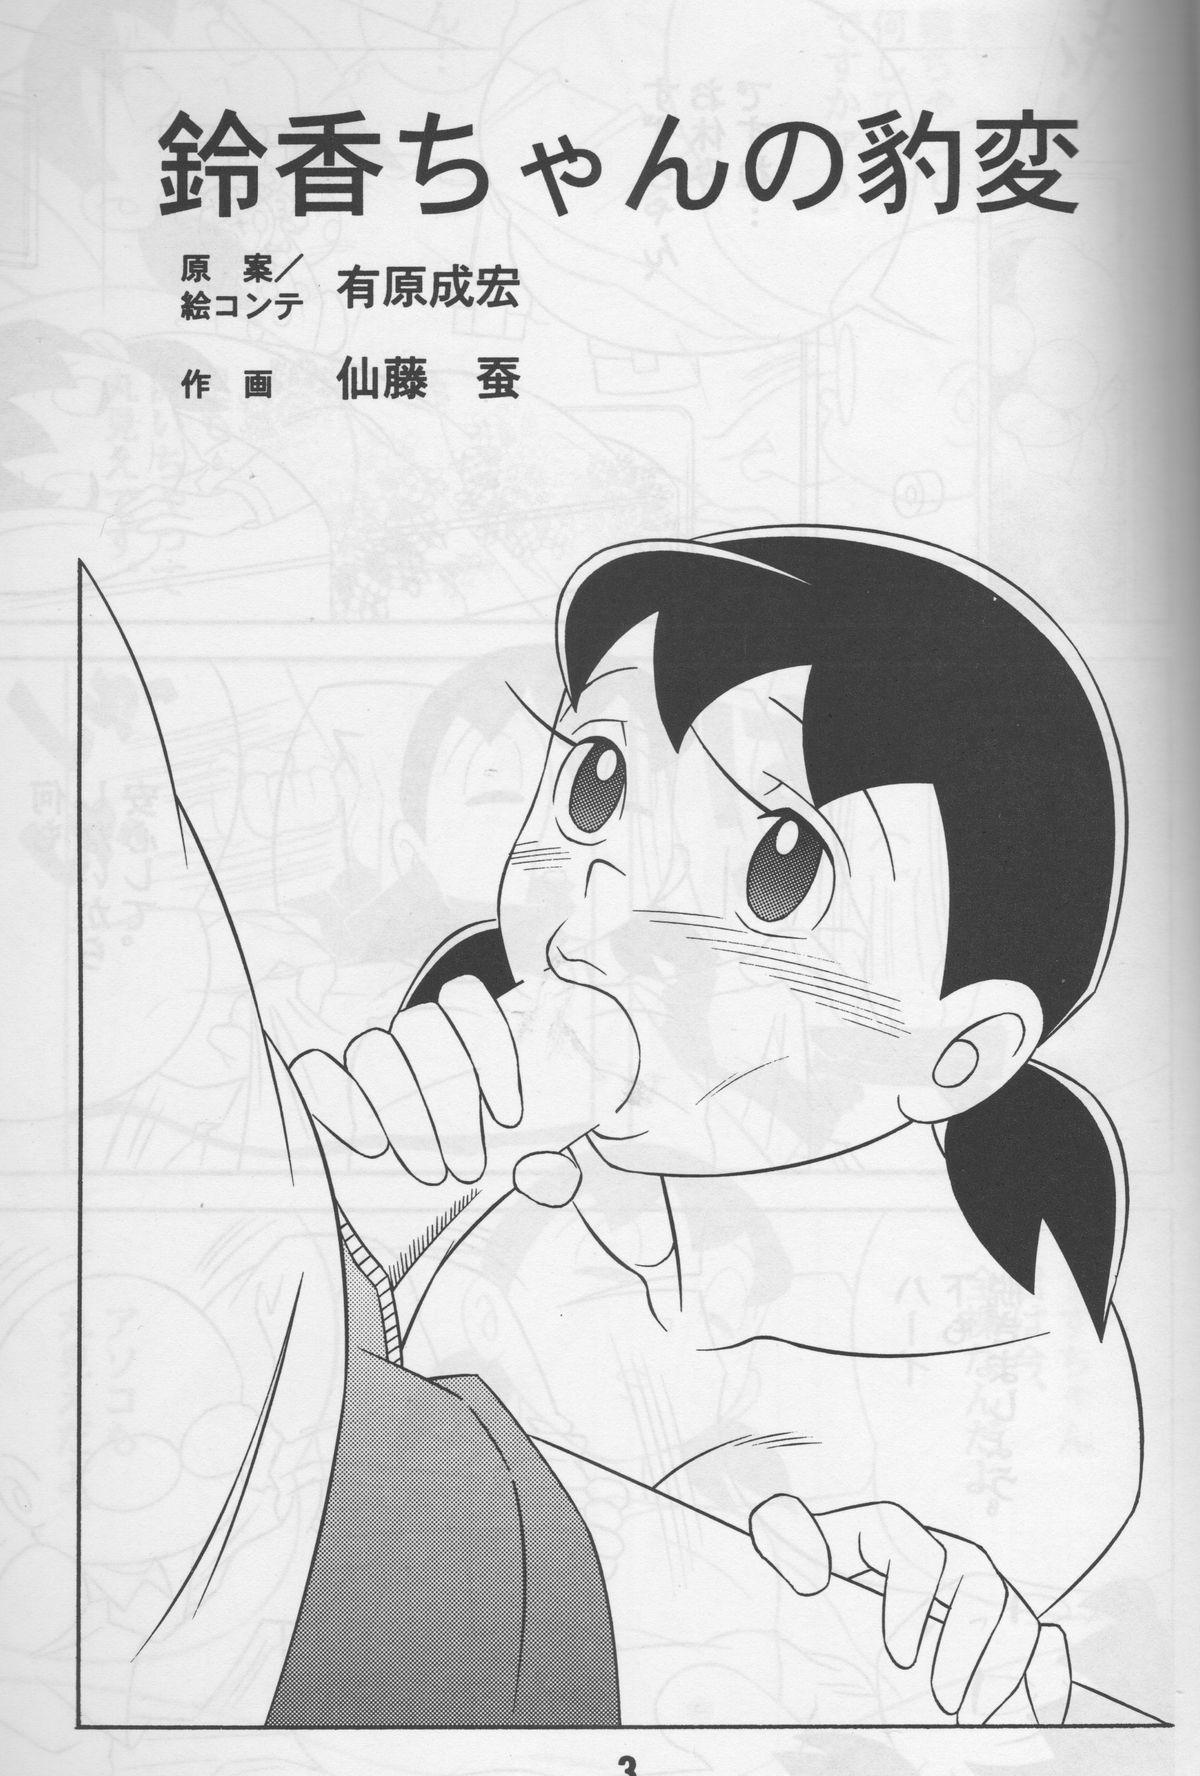 Vintage Modokashii Sekai no Uede - Doraemon Venezuela - Page 2